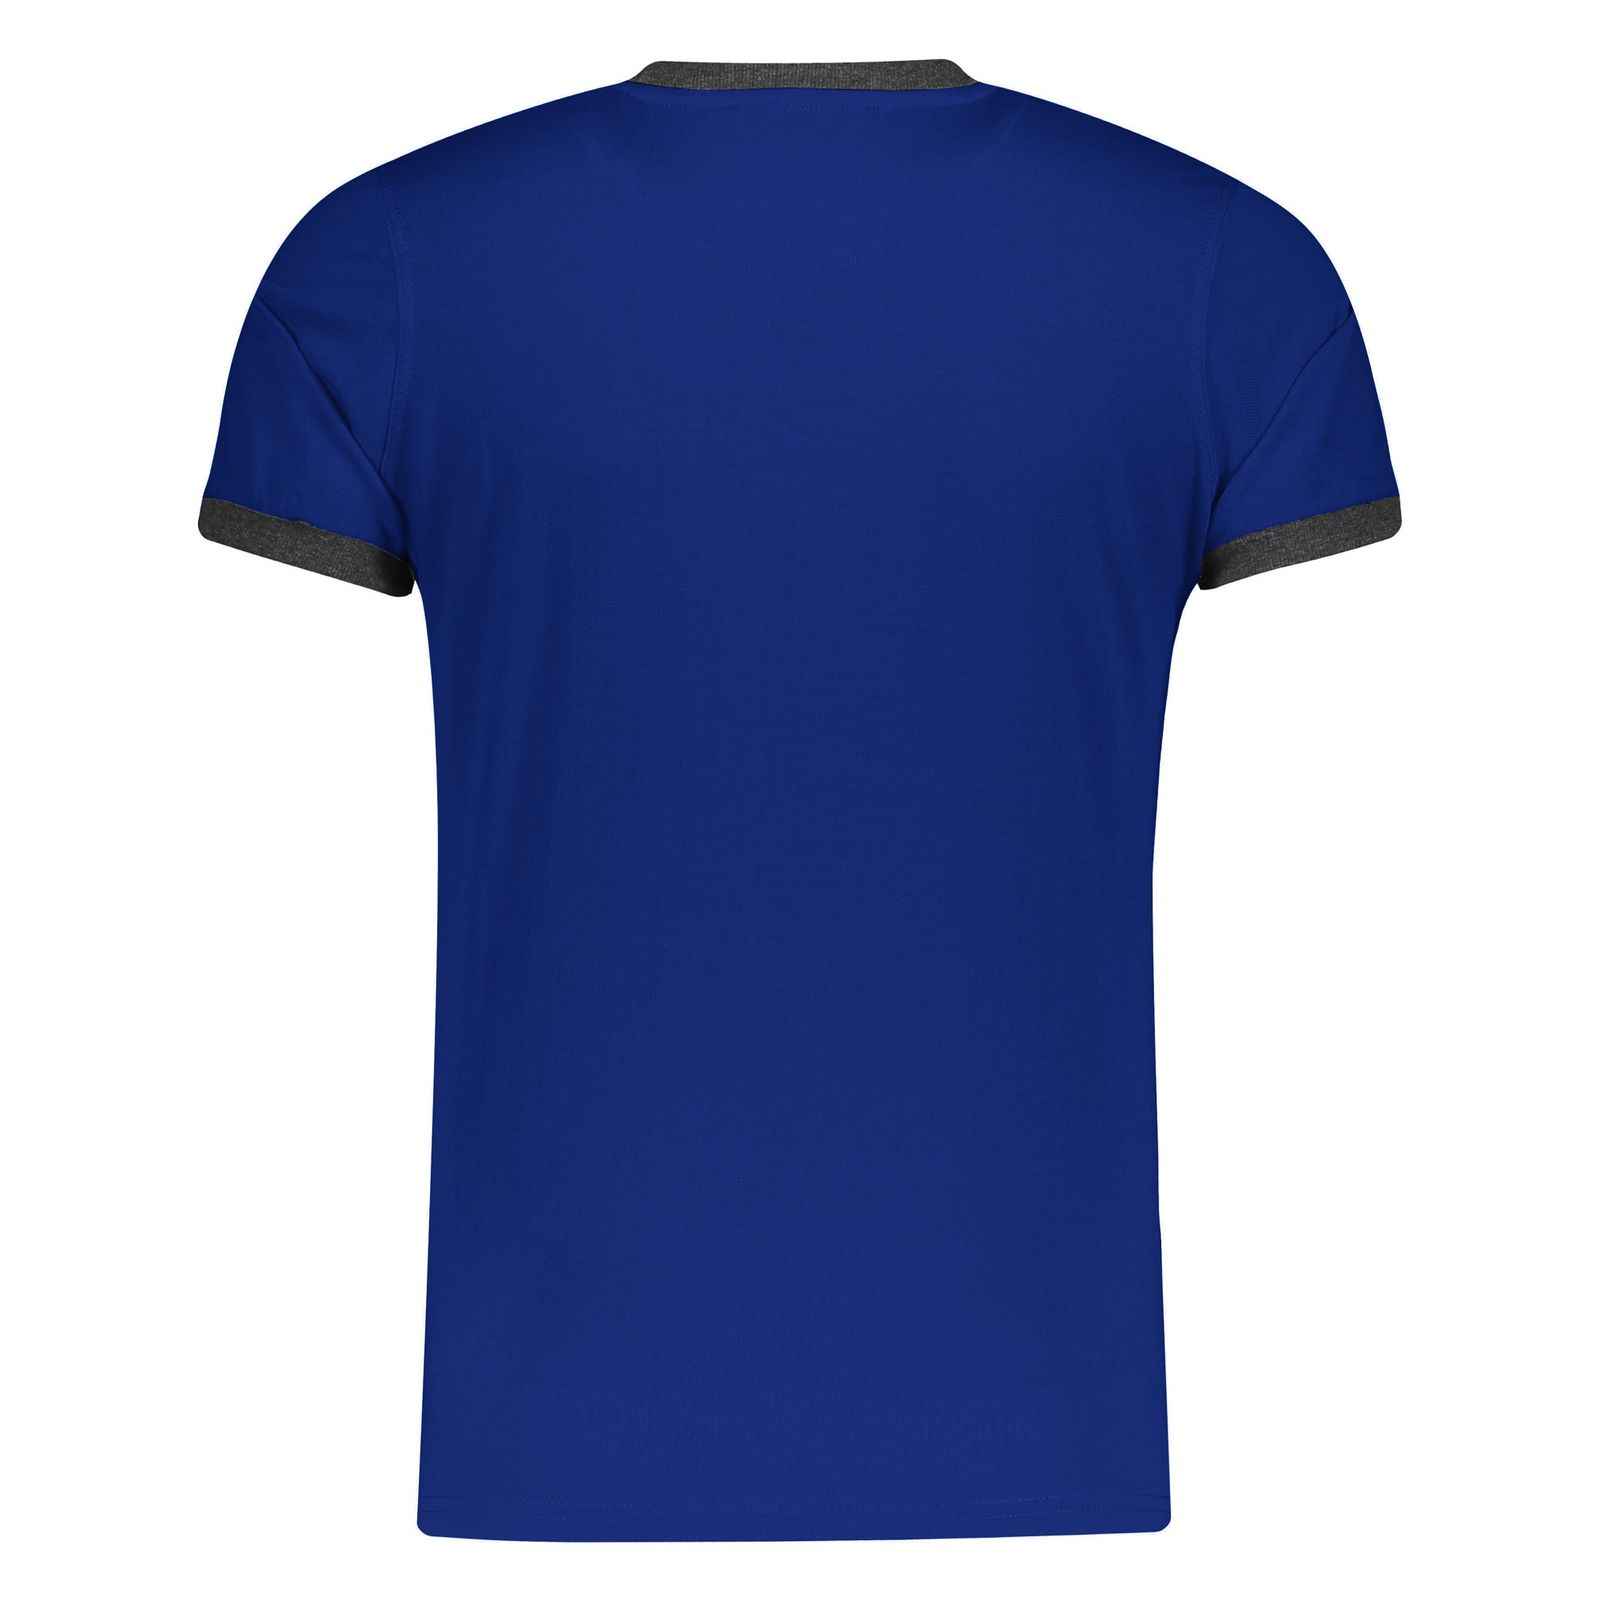 تی شرت ورزشی مردانه بی فور ران مدل 980311-58 - آبی - 3